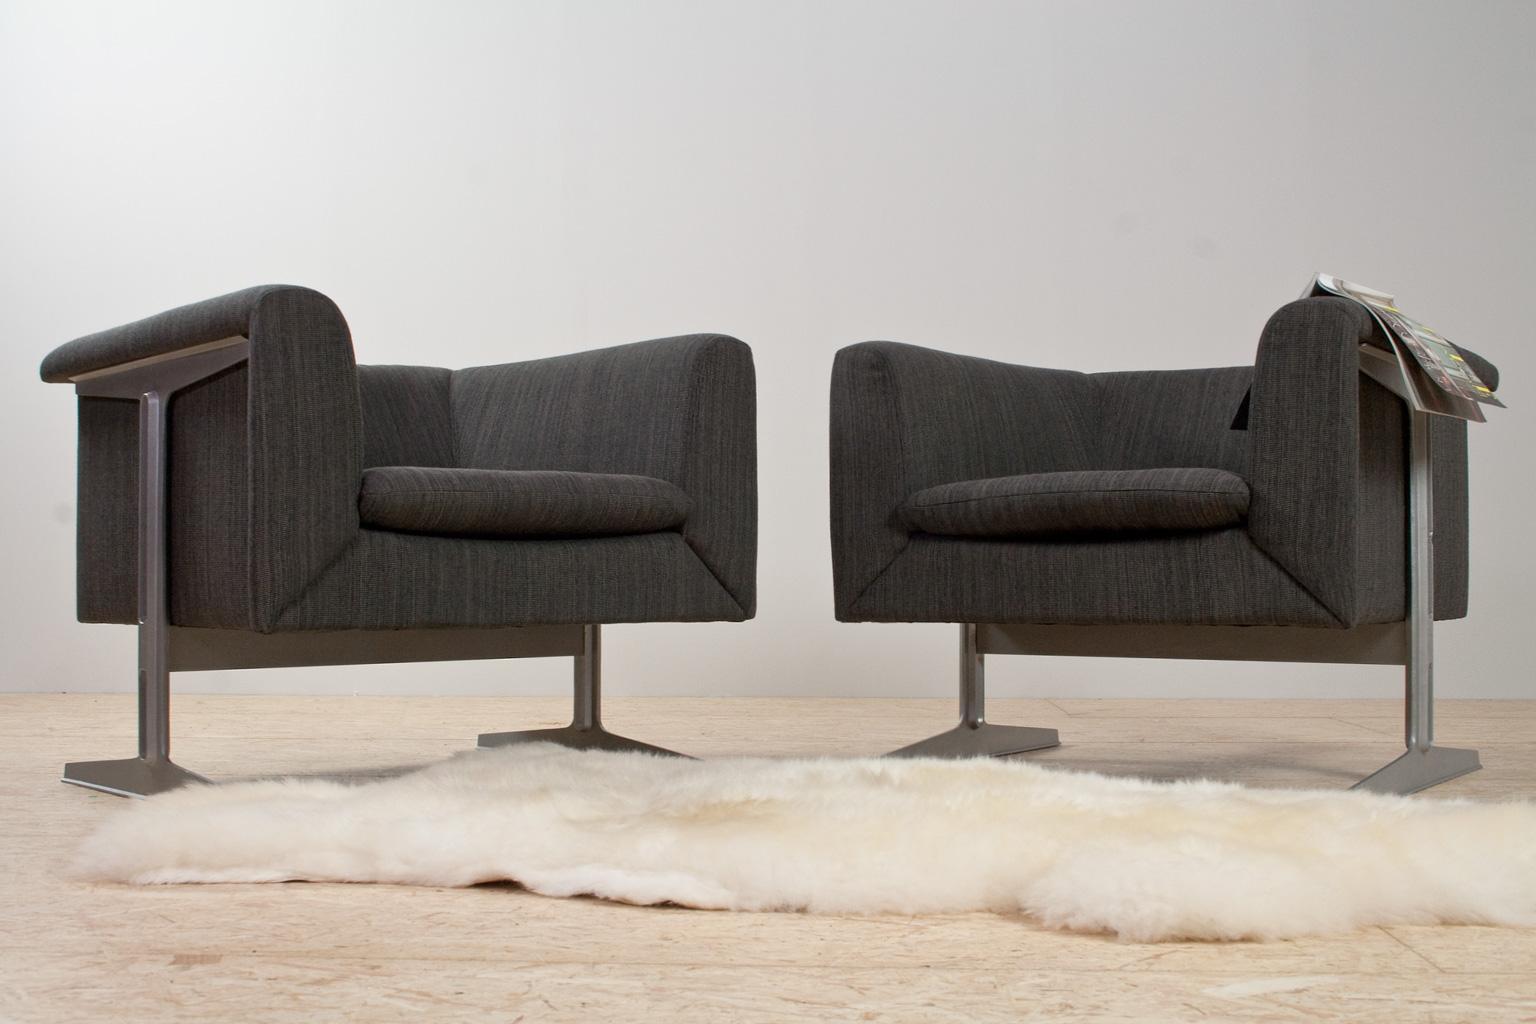 Dutch Mid-Century Modern Set of Chairs in Grey by Geoffrey Harcourt, Artifort, 1969